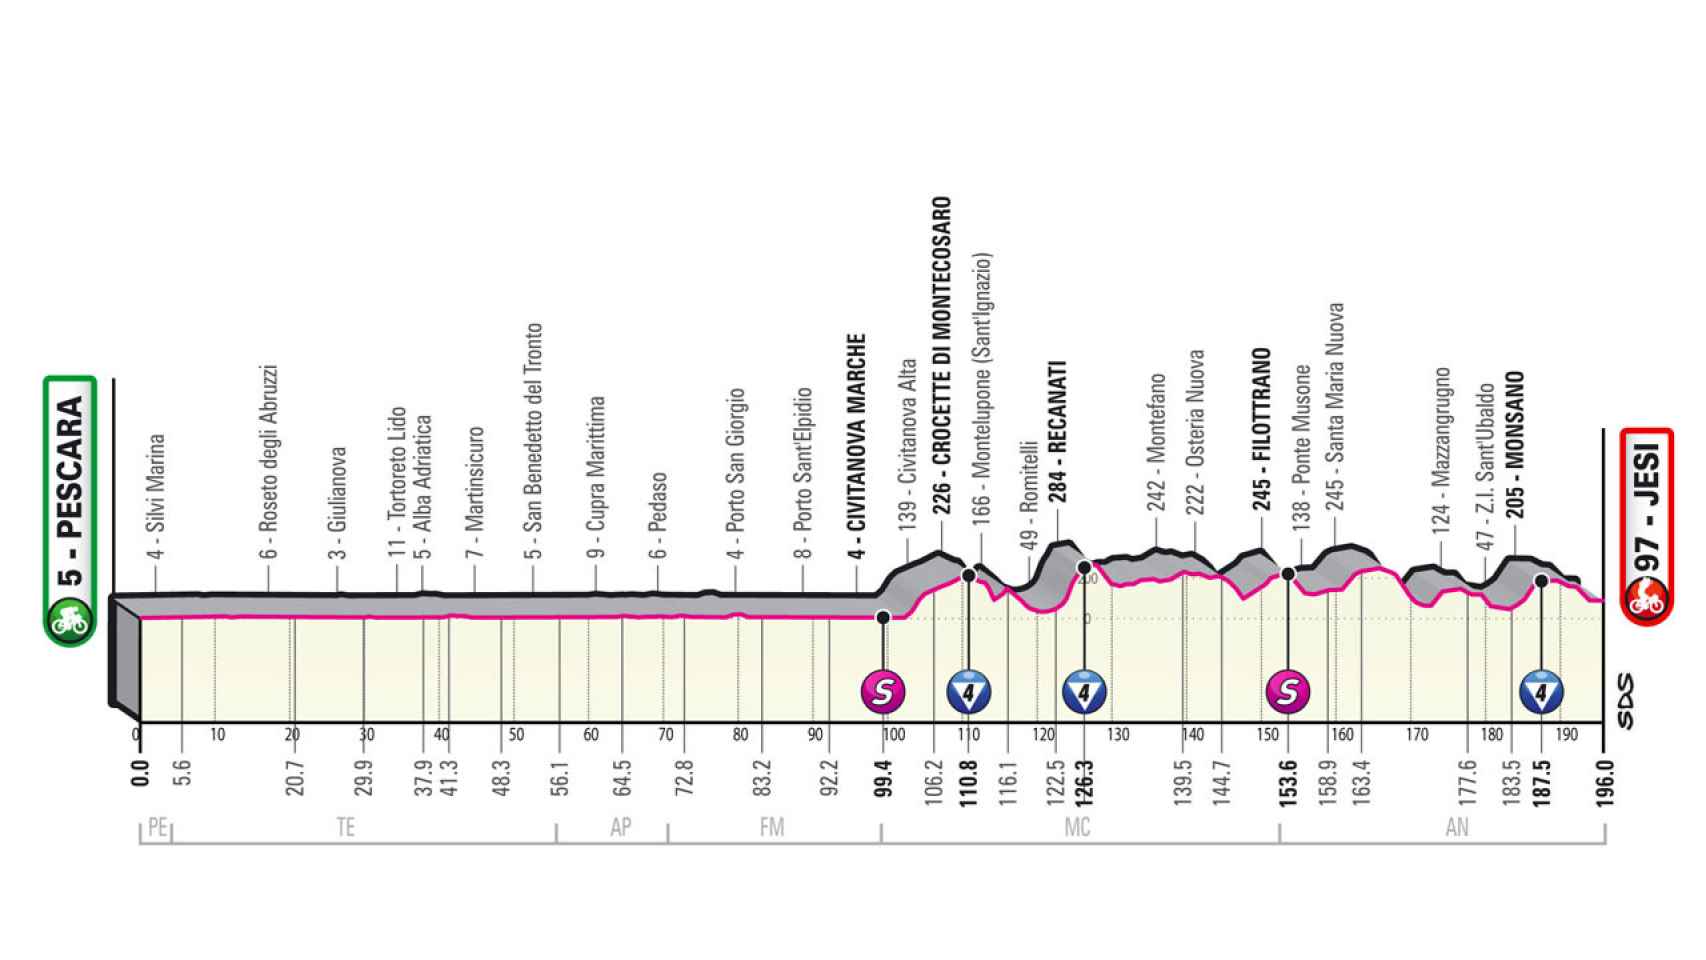 Etapa 10 del Giro de Italia 2022 (Pescara - Jesi 196 km)